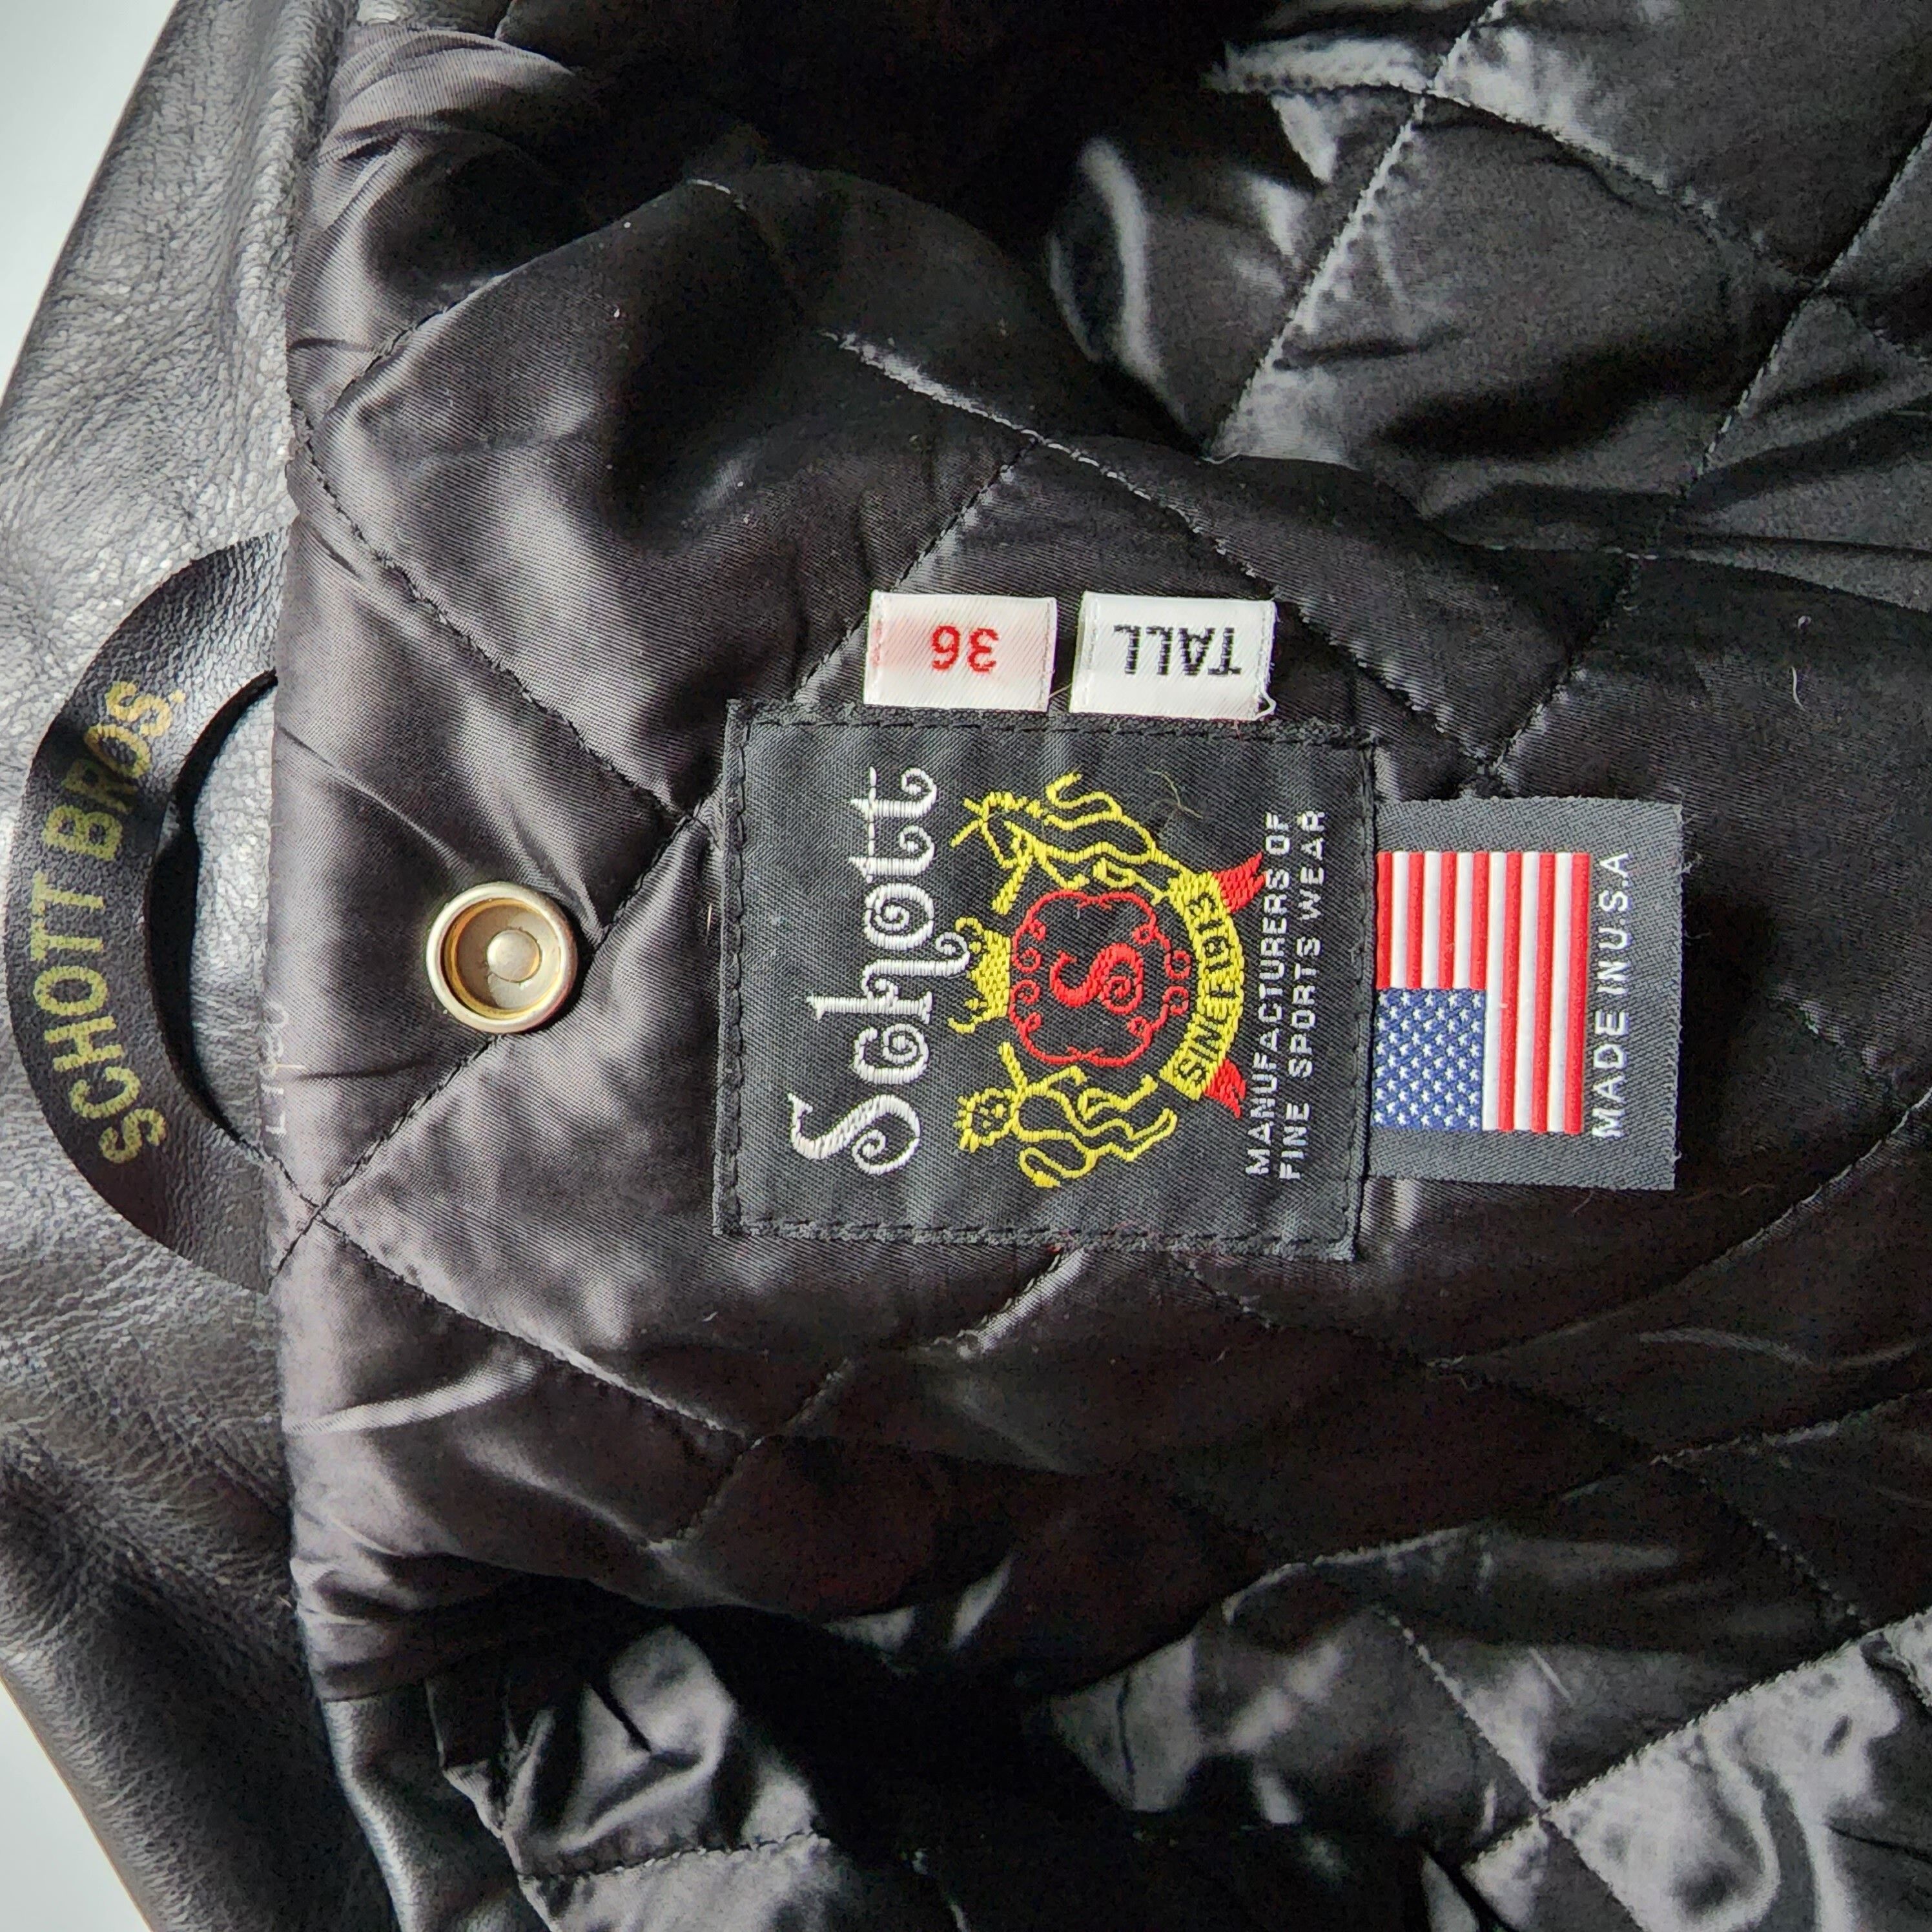 Schott NYC - 613UST Vintage One Star Rider Jacket - 7